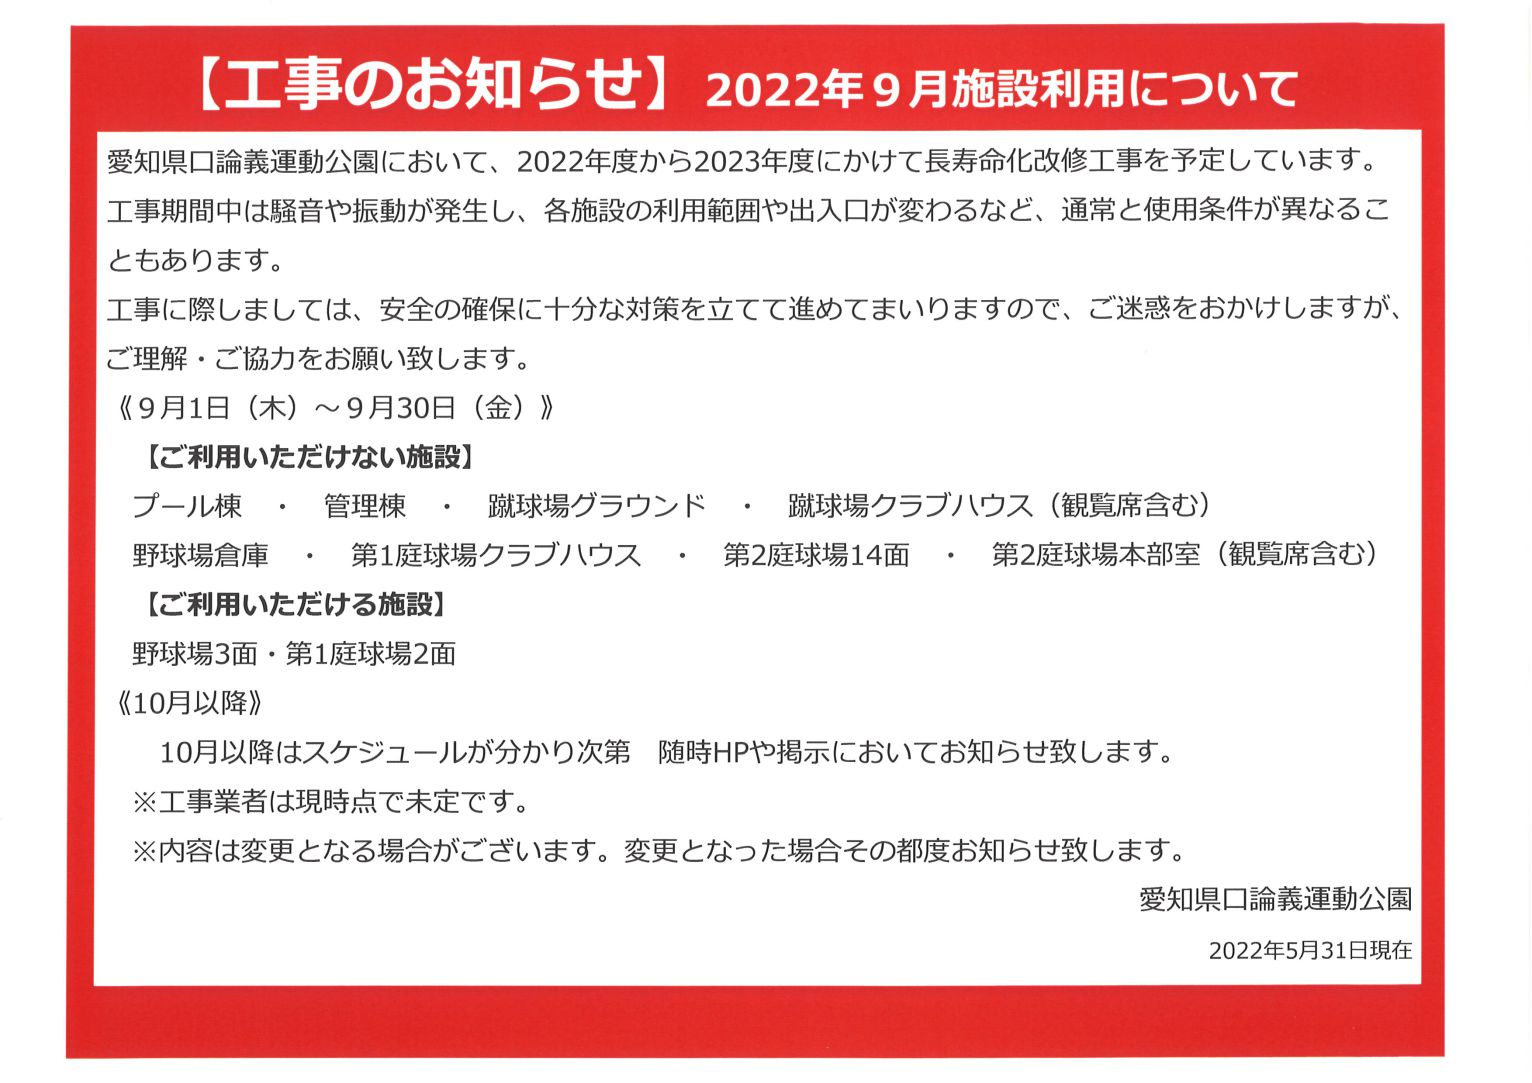 【工事のお知らせ】2022年9月施設利用について